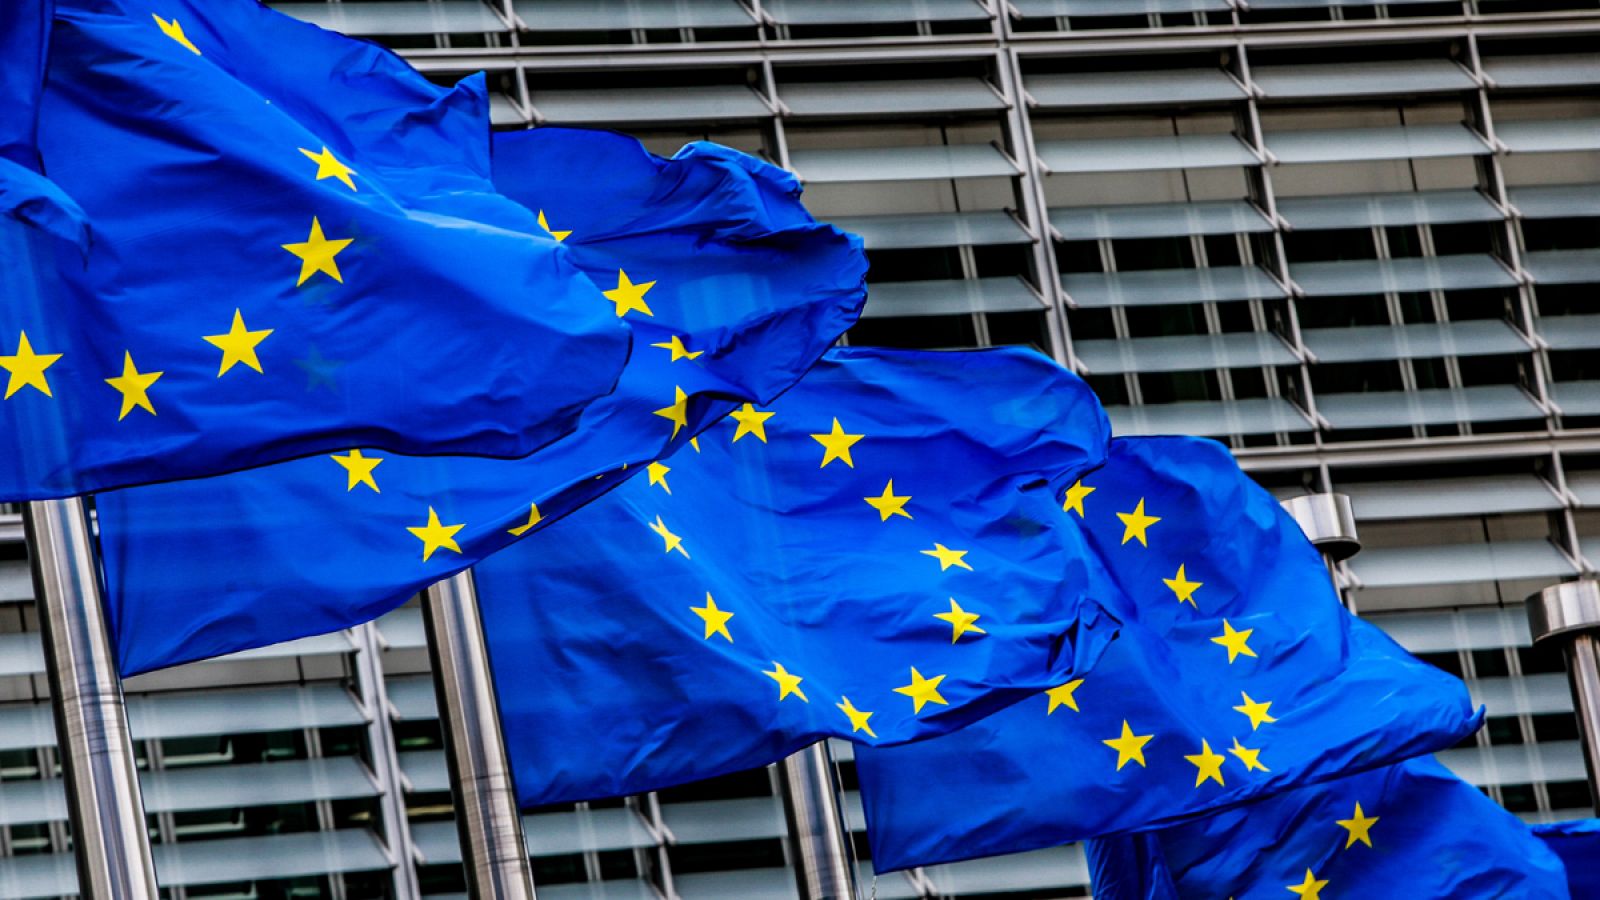 Banderas de la Unión Europea ondean ante la sede de la Comisión Europea